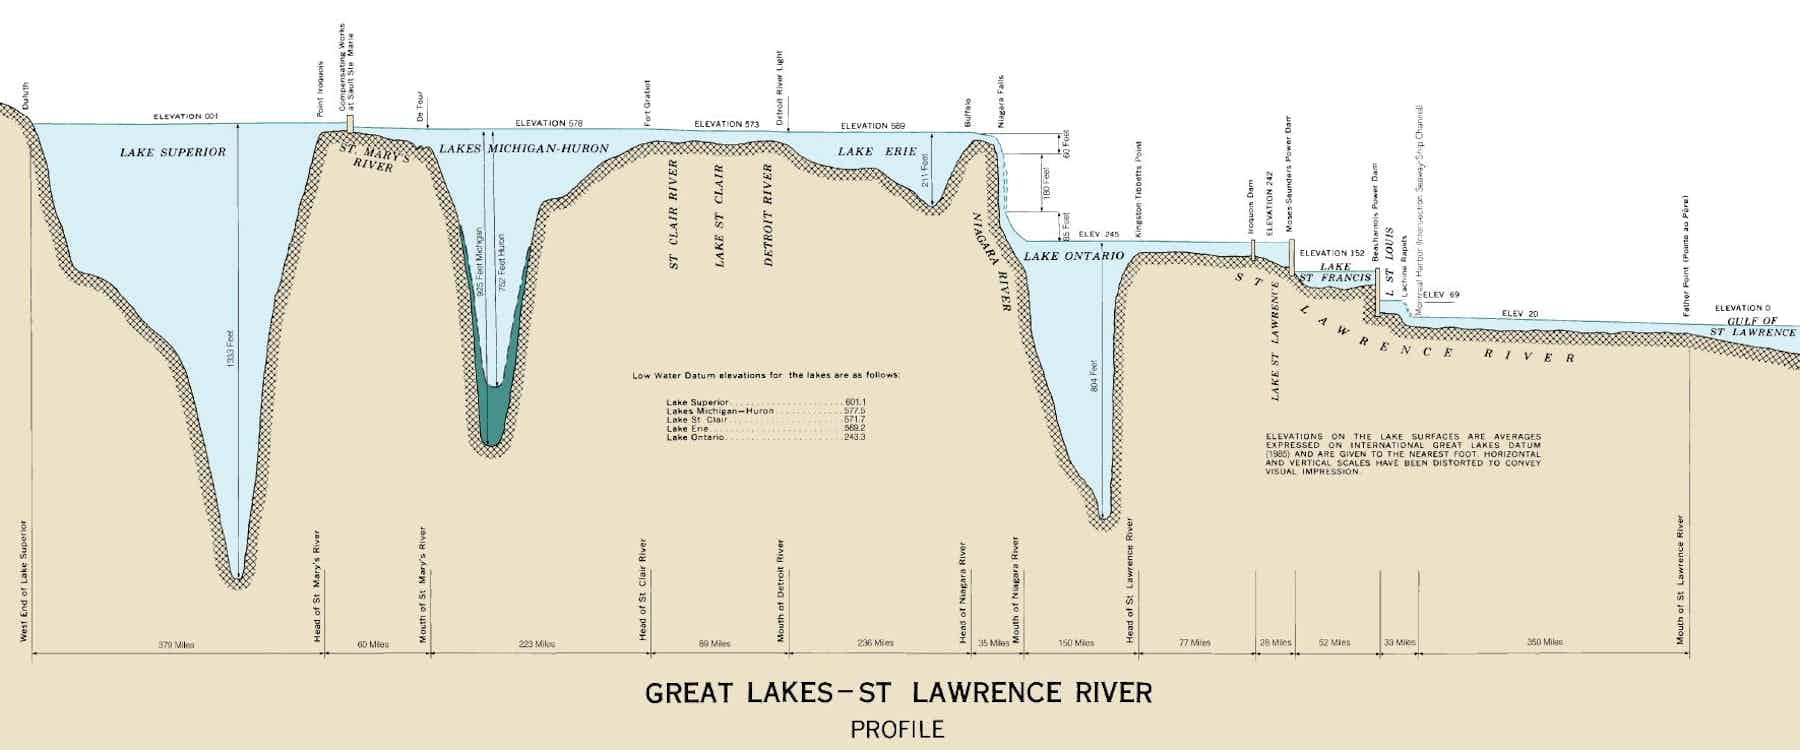 Озеро Мичиган глубина. Райявр озеро. Great Lakes. Шкала глубин озера Гурон. Глубина озера виштинец